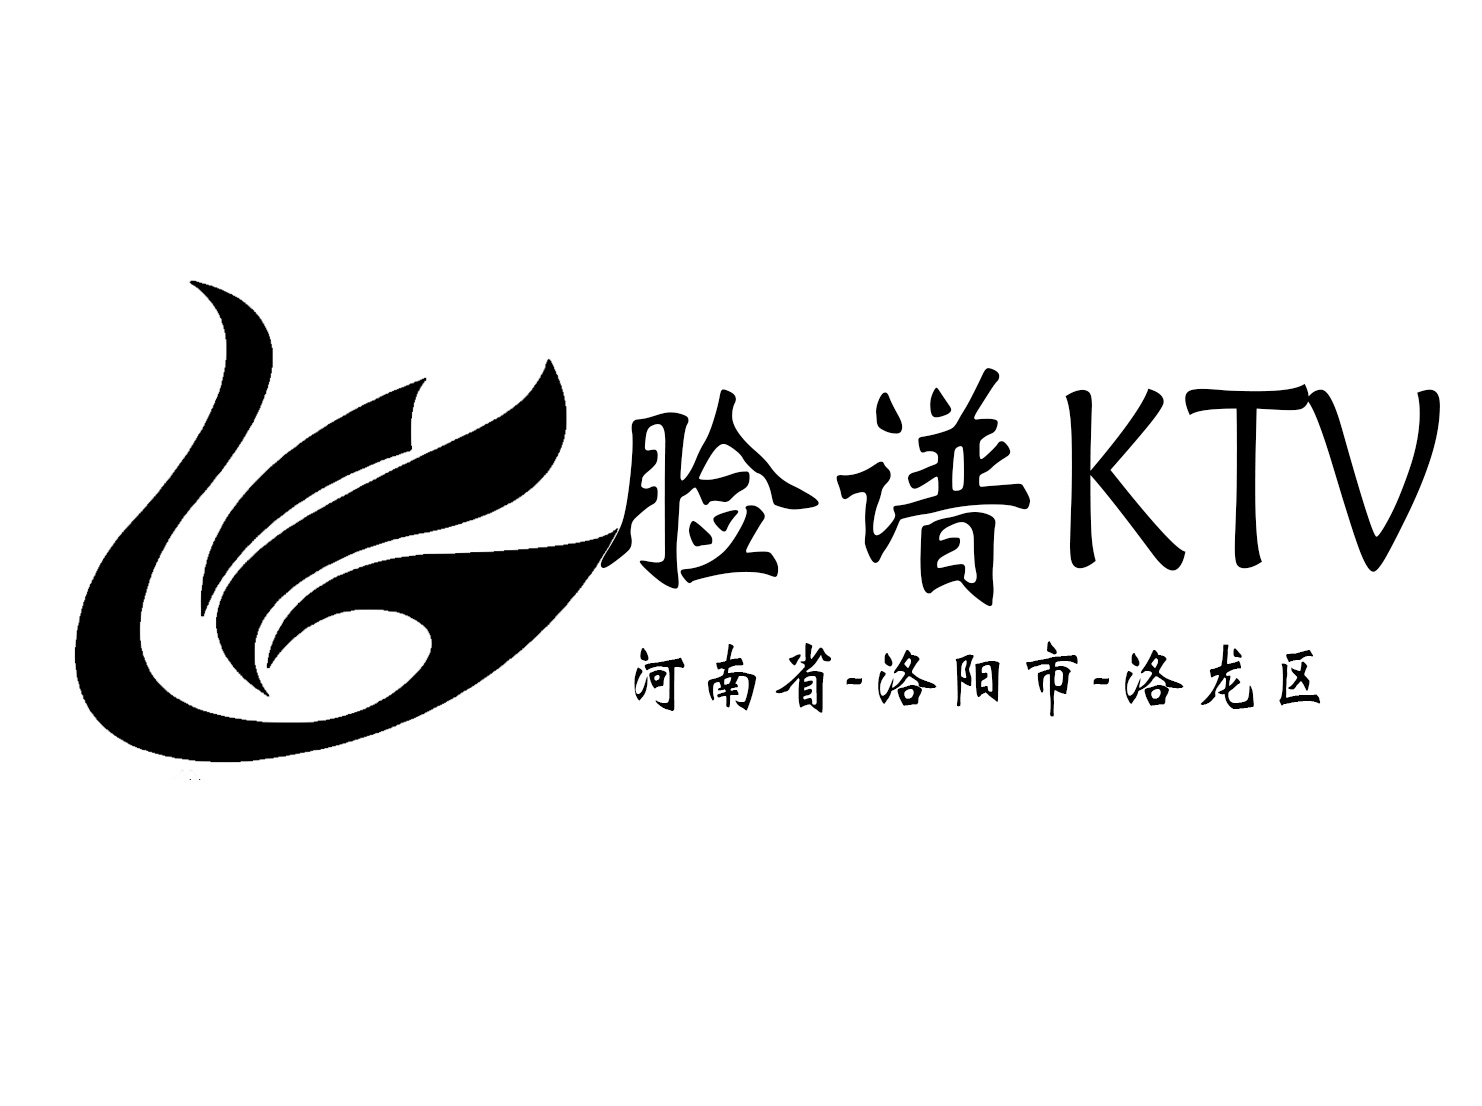 洛阳脸谱KTV